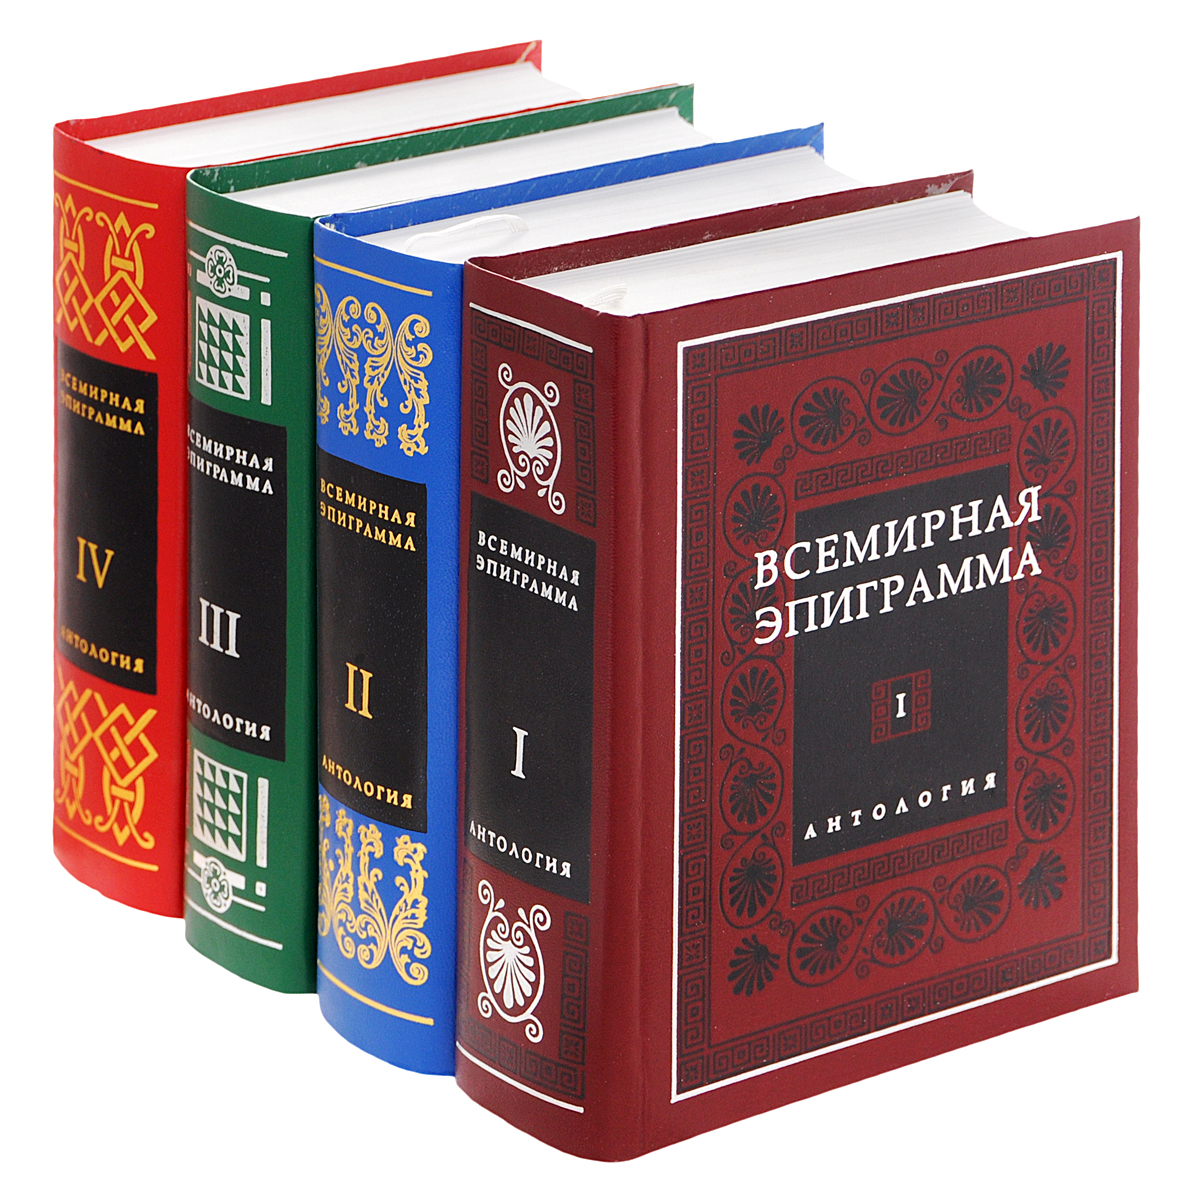 Всемирная эпиграмма. Антология в 4 томах (комплект)